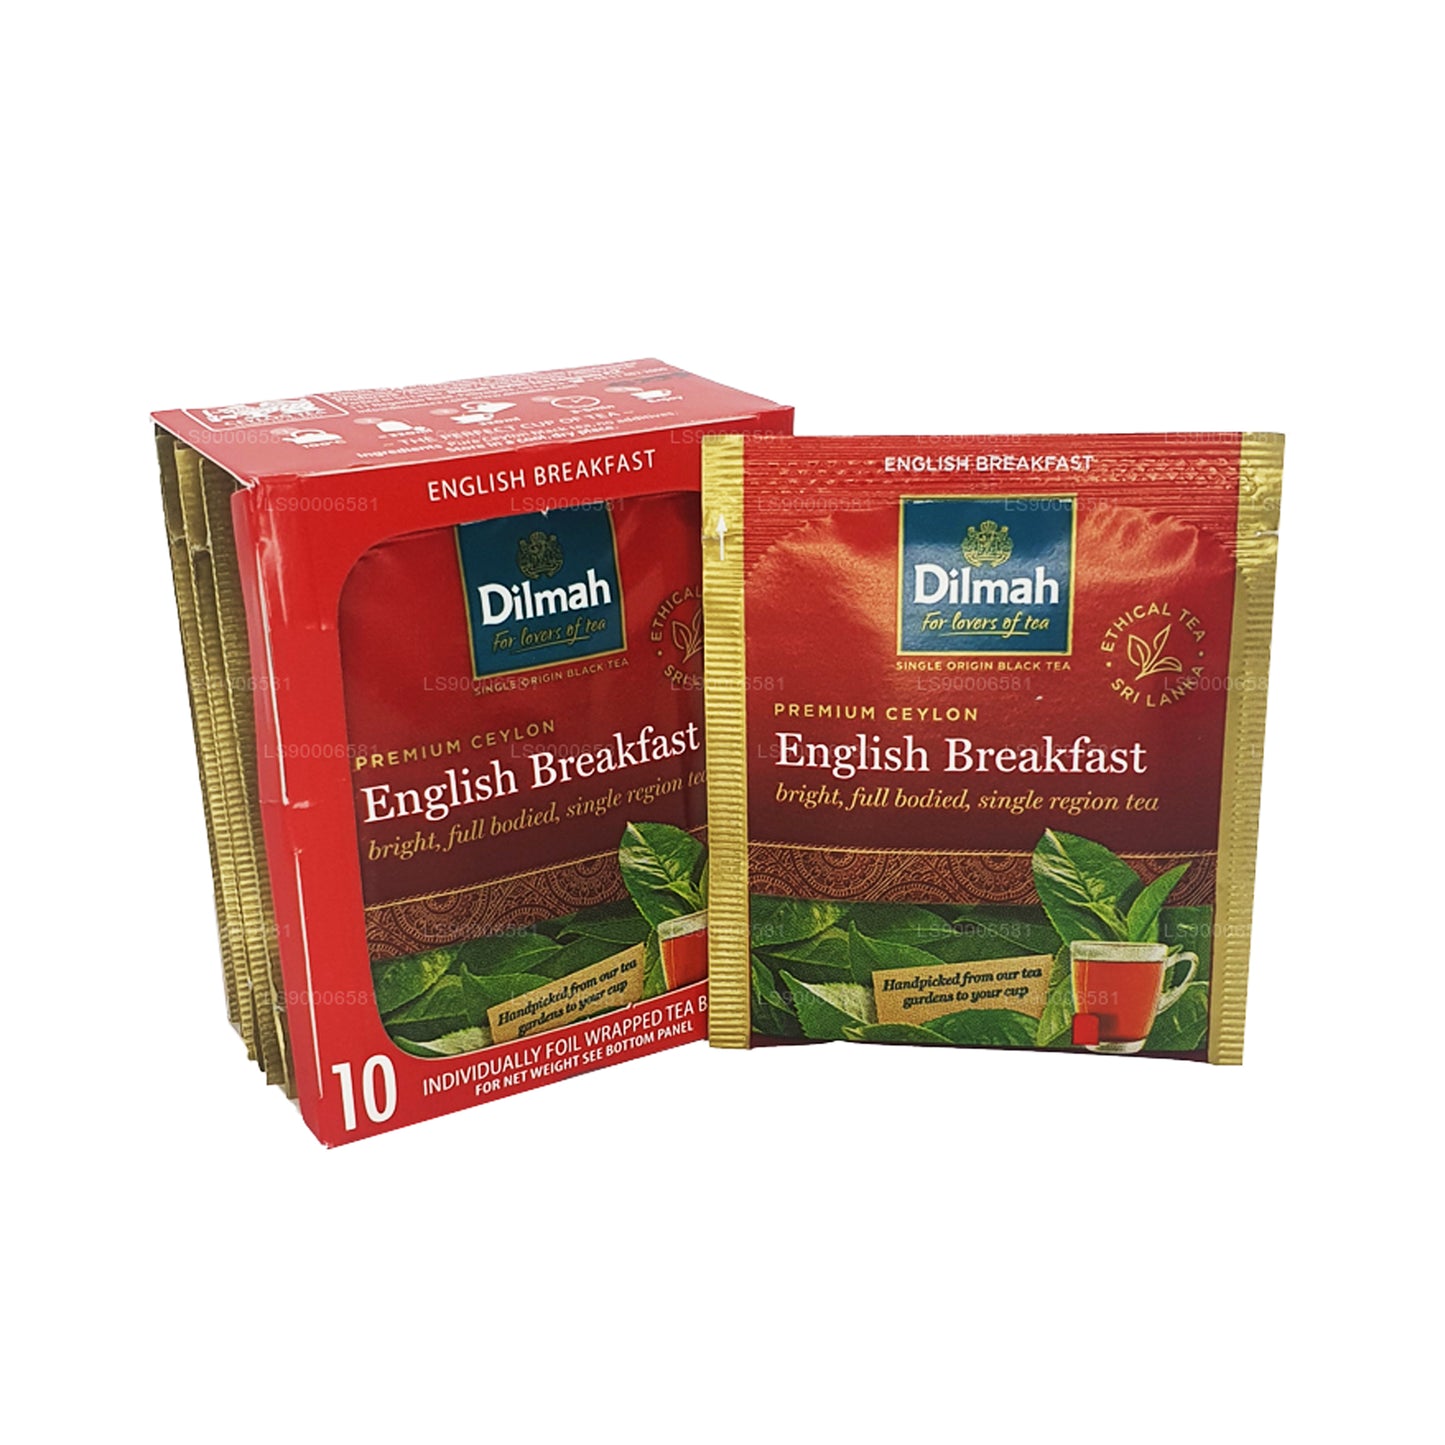 Té de desayuno inglés Dilmah (20 g), 10 bolsitas de té envueltas individualmente en papel de aluminio